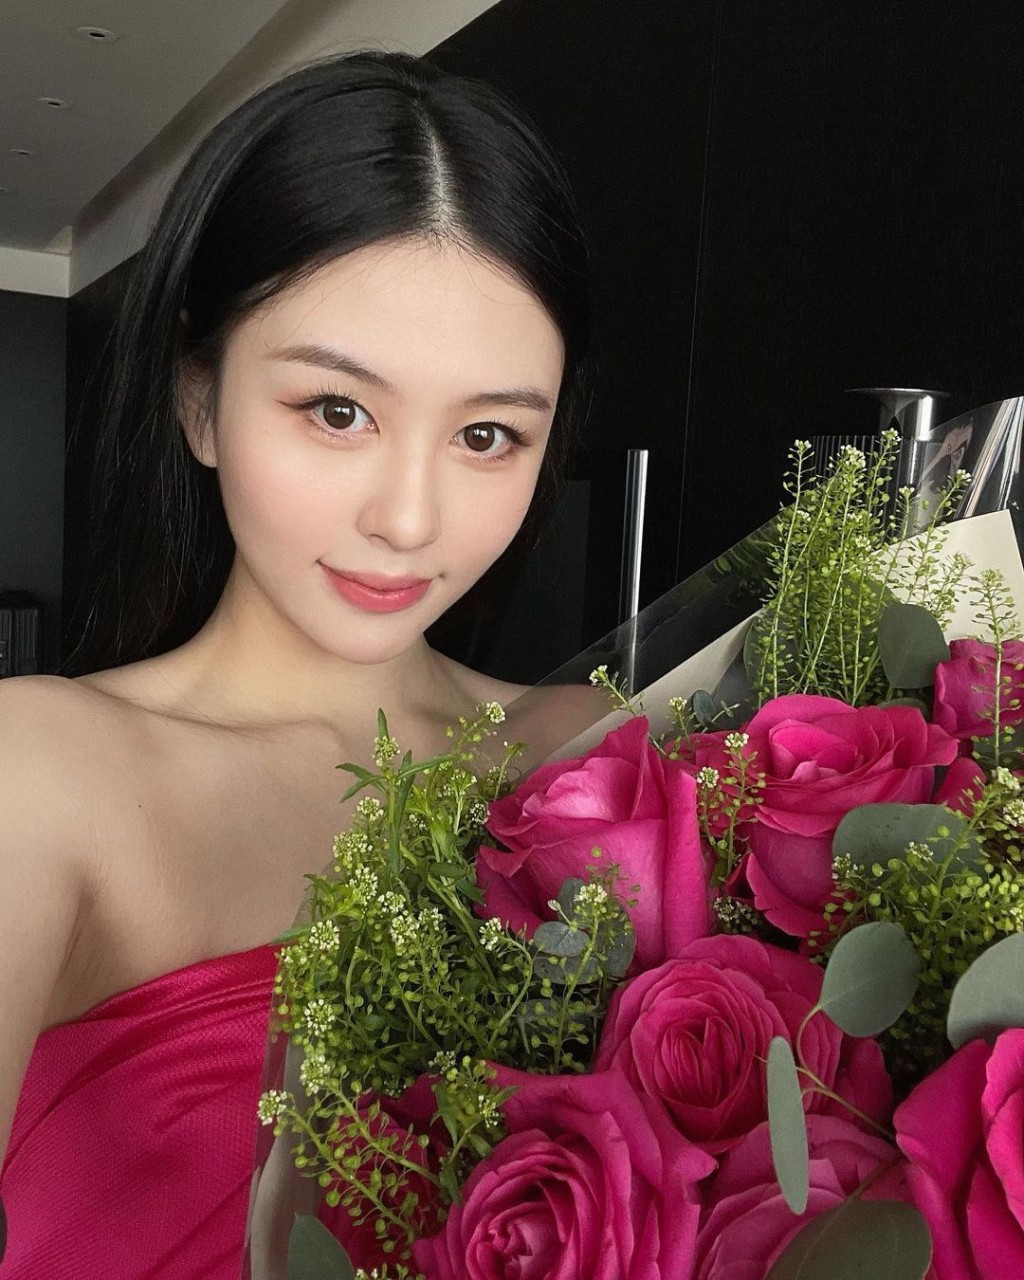 沈月昨日（16日）分享捧着大束粉红玫瑰的照片，相中的她亦配合花束穿上粉红色衣服，颜色非常抢眼。